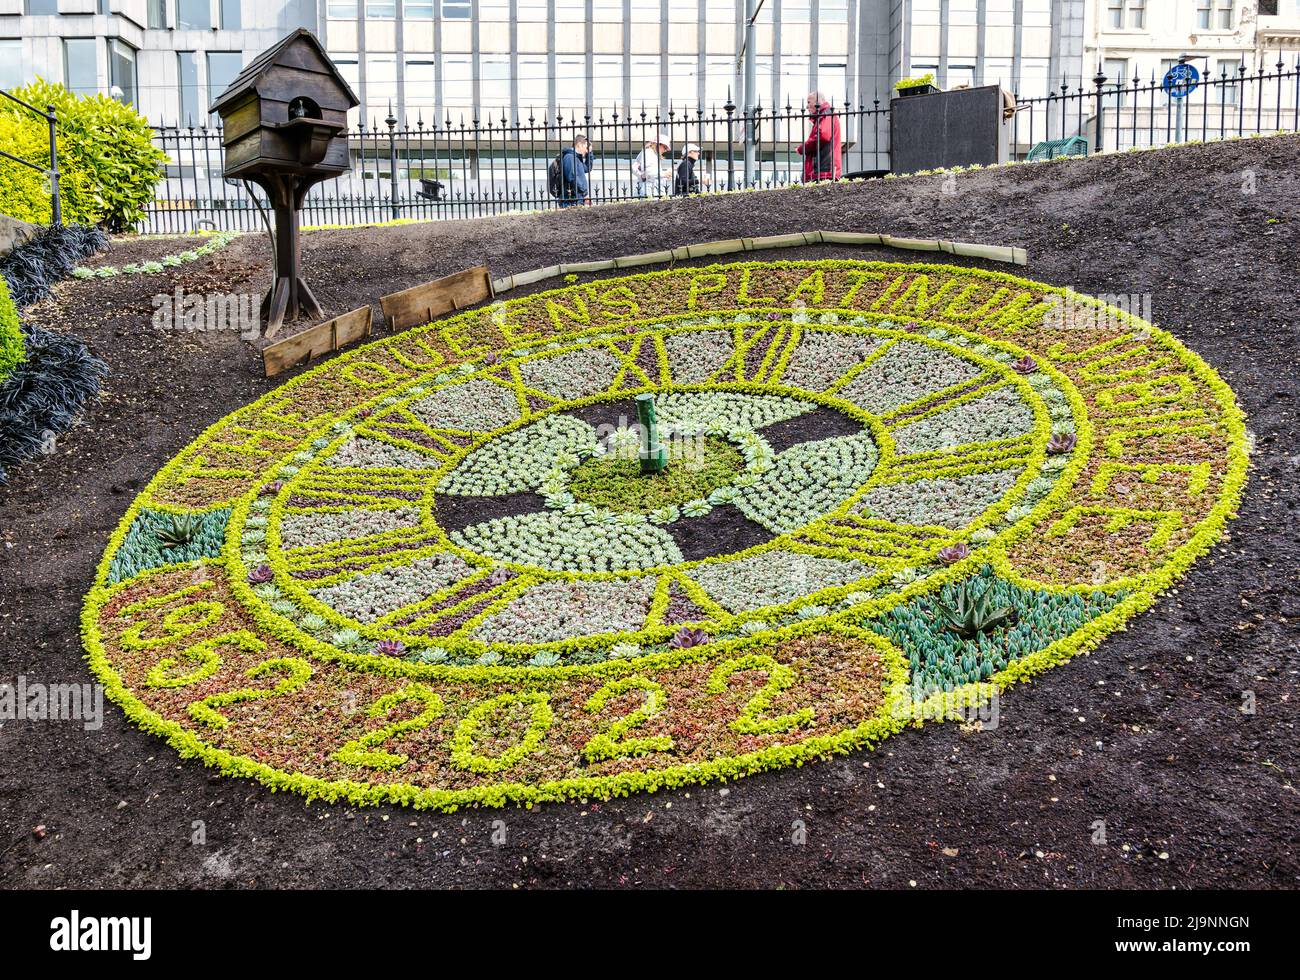 Princes Street giardino famoso orologio floreale in preparazione per celebrare il Giubileo del platino della Regina, Edimburgo, Scozia, Regno Unito Foto Stock